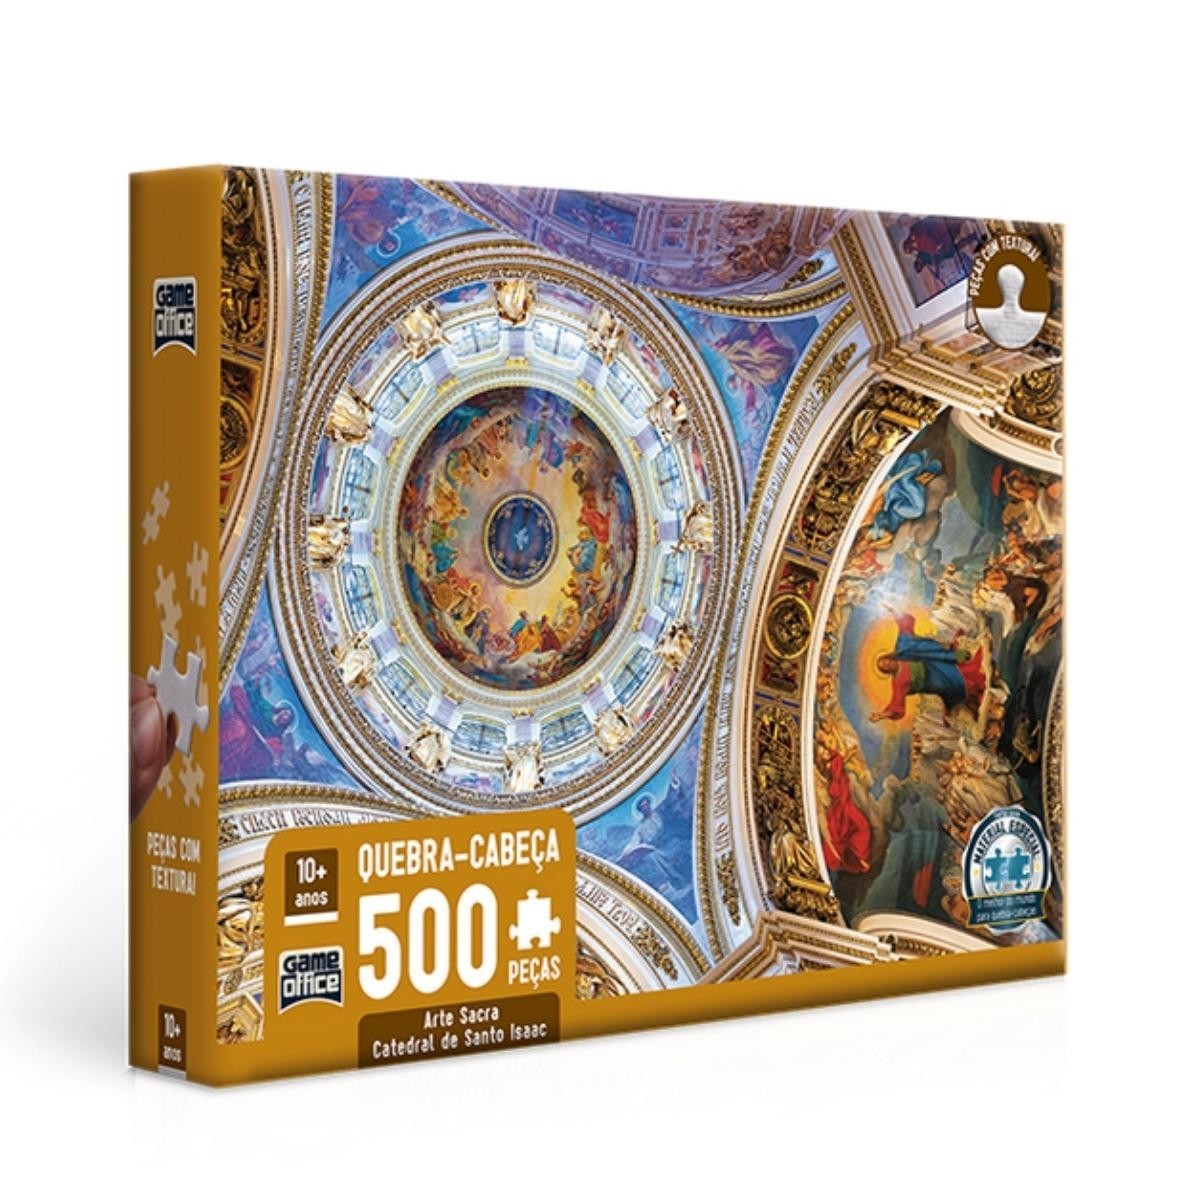 Quebra-Cabeça 500 peças Arte Sacra: Catedral de Santo Isaac - Toyster